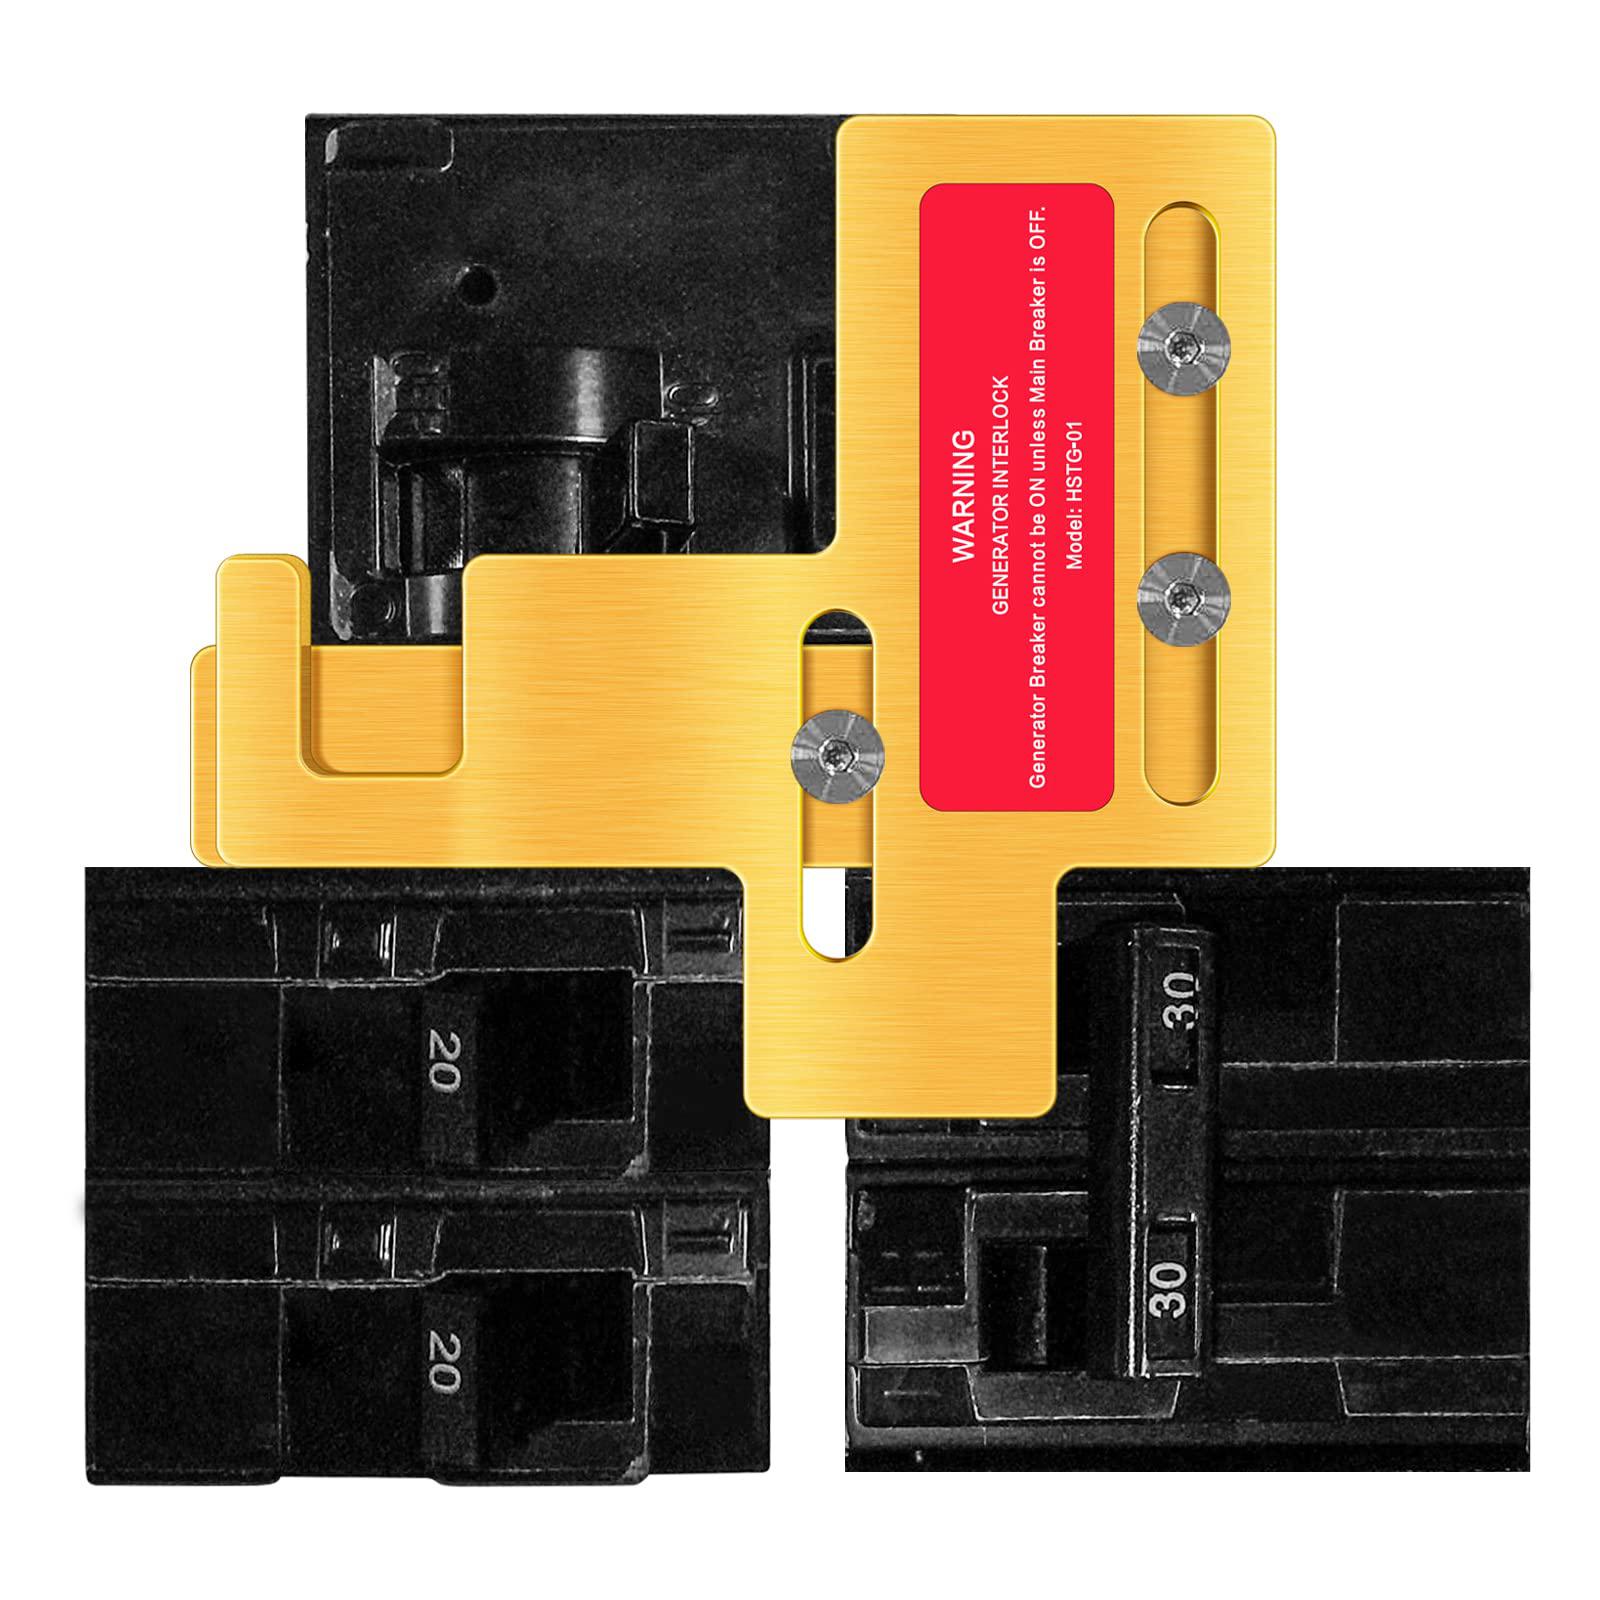 Haoguo generator interlock kit, main breaker interlock kit for murray or siemens 150 amp and 200 amp panels